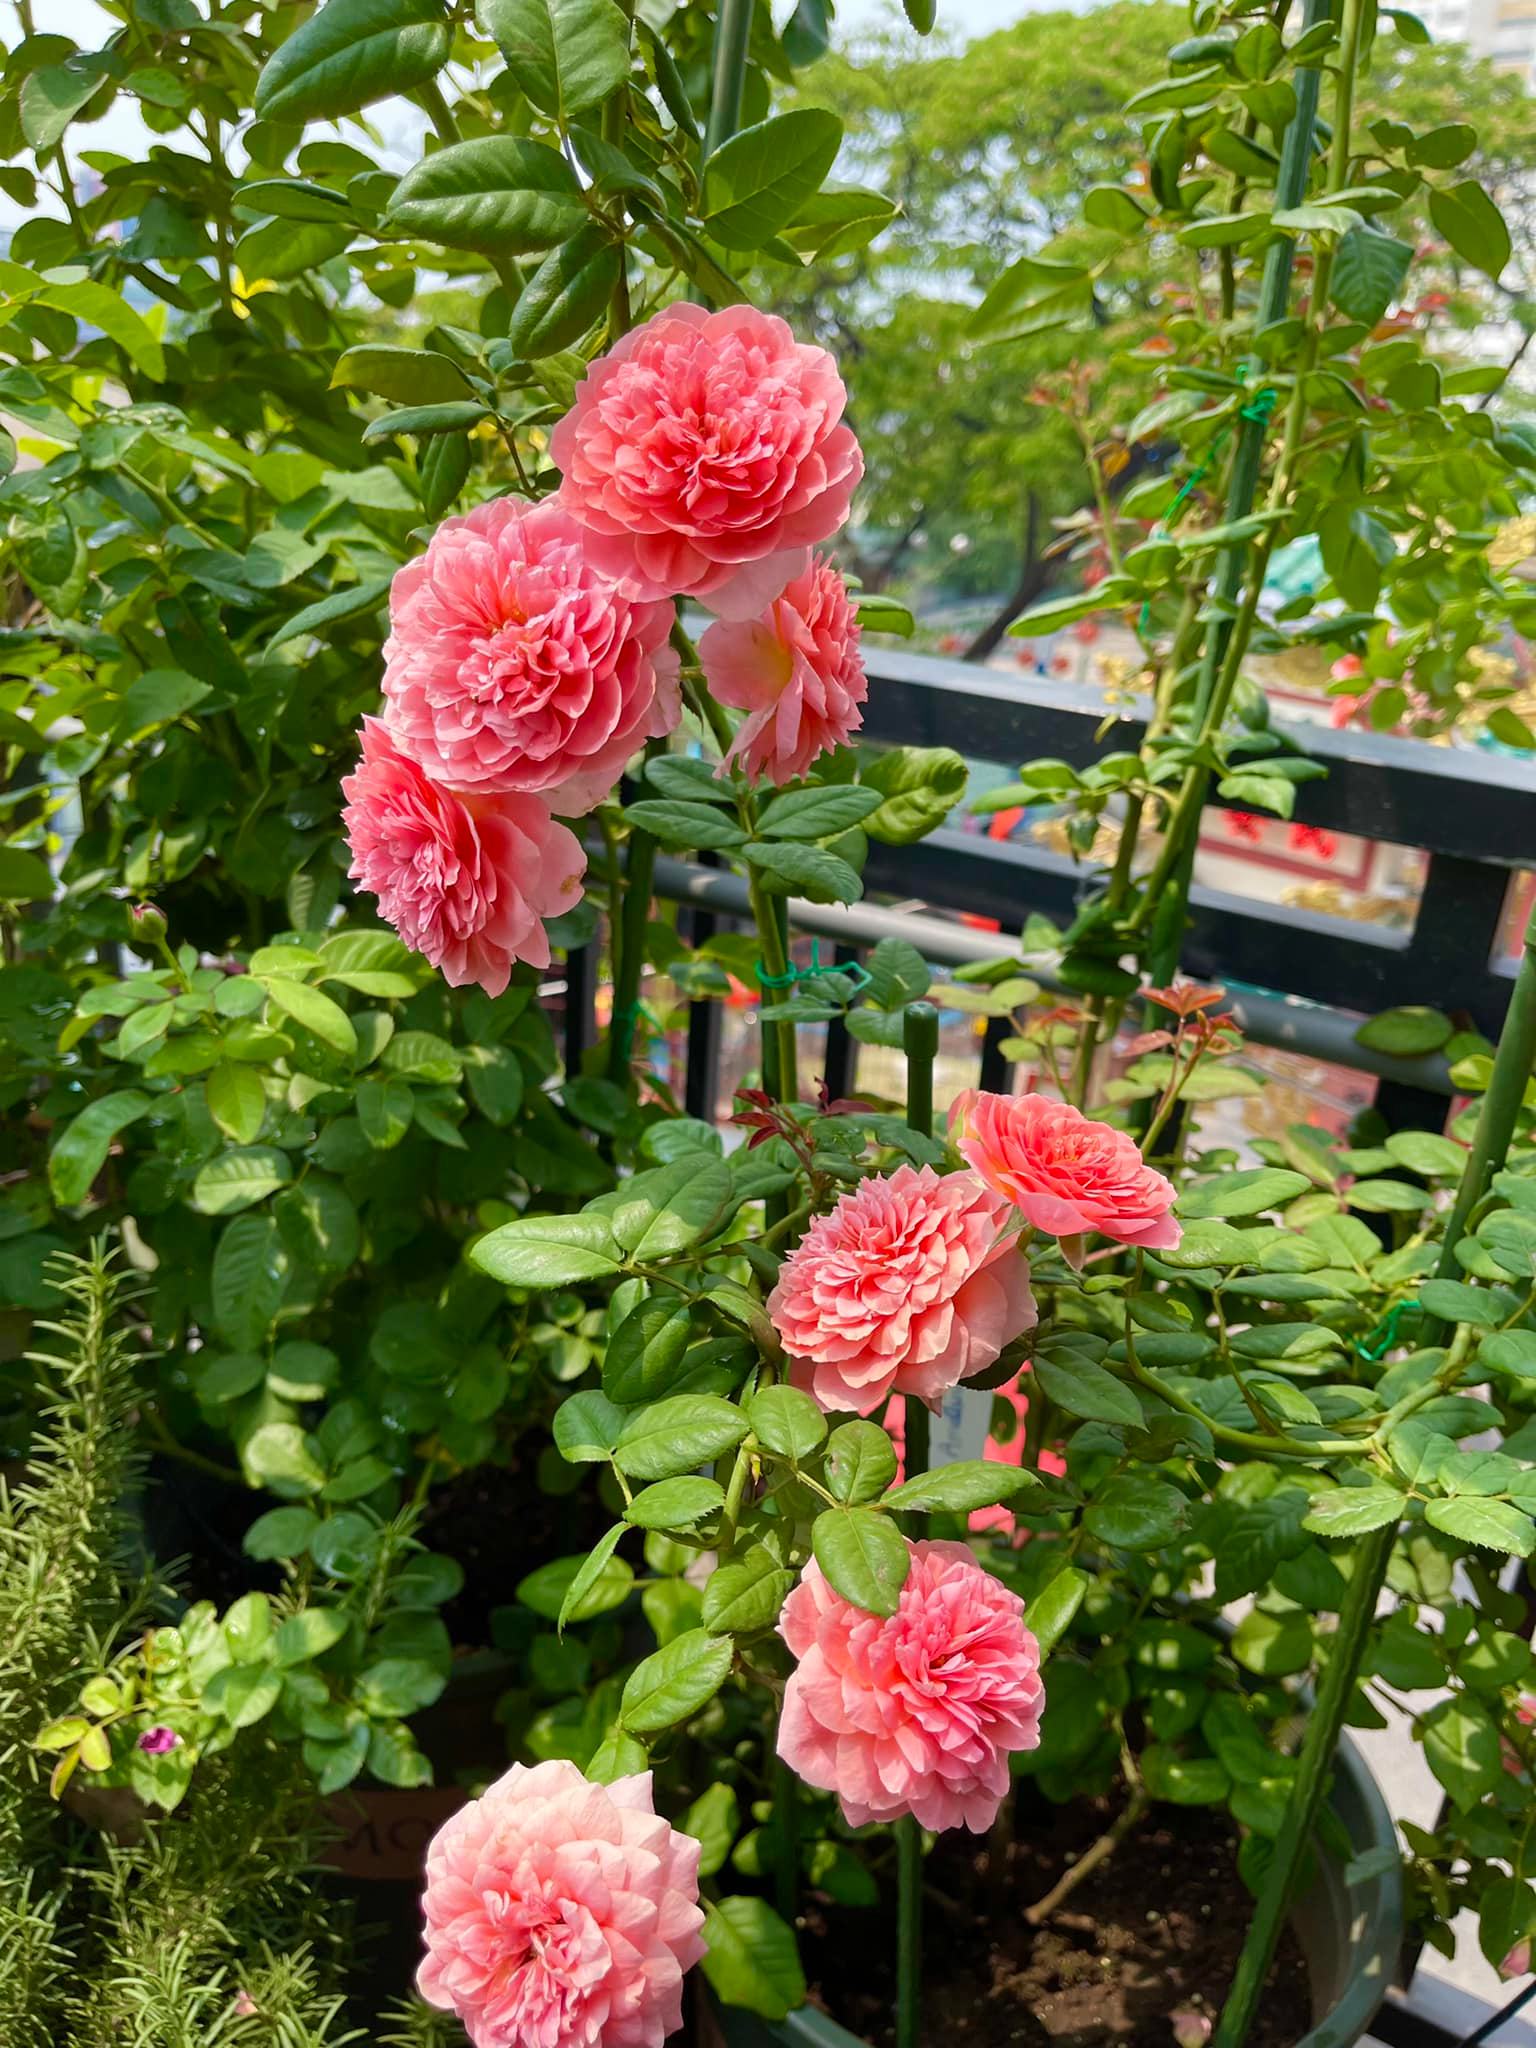 Khu vườn hoa hồng đẹp ngây ngất trên sân thượng ở TP HCM - Ảnh 6.